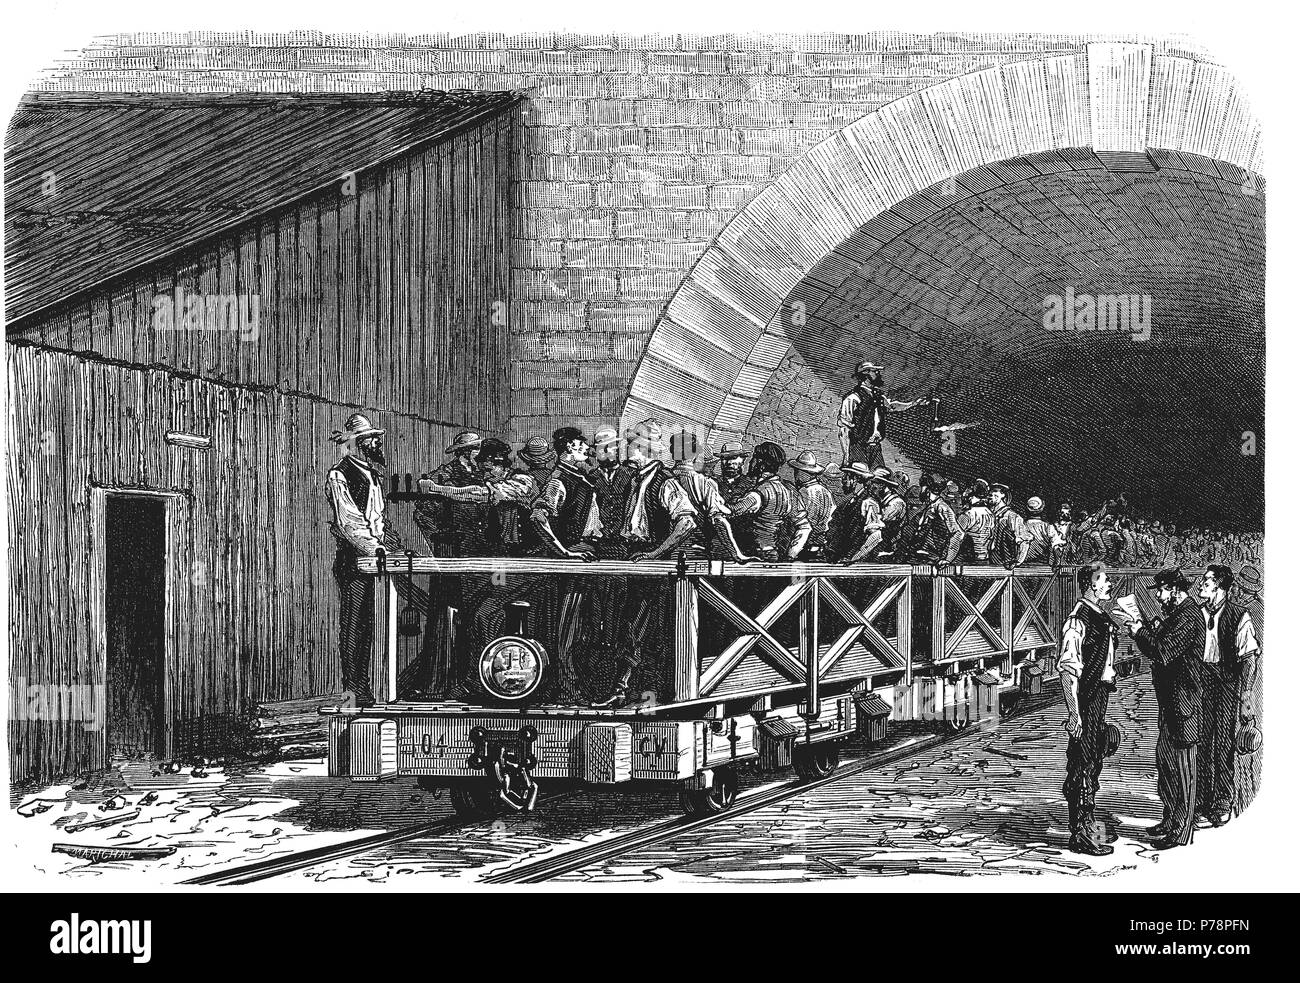 Apertura de los Alpes, salida de los obreros por la boca francesa del Tunel de Mont Cenís entre Francia e Italia después del trabajo, en septiembre de 1871. Grabado de época. Stock Photo